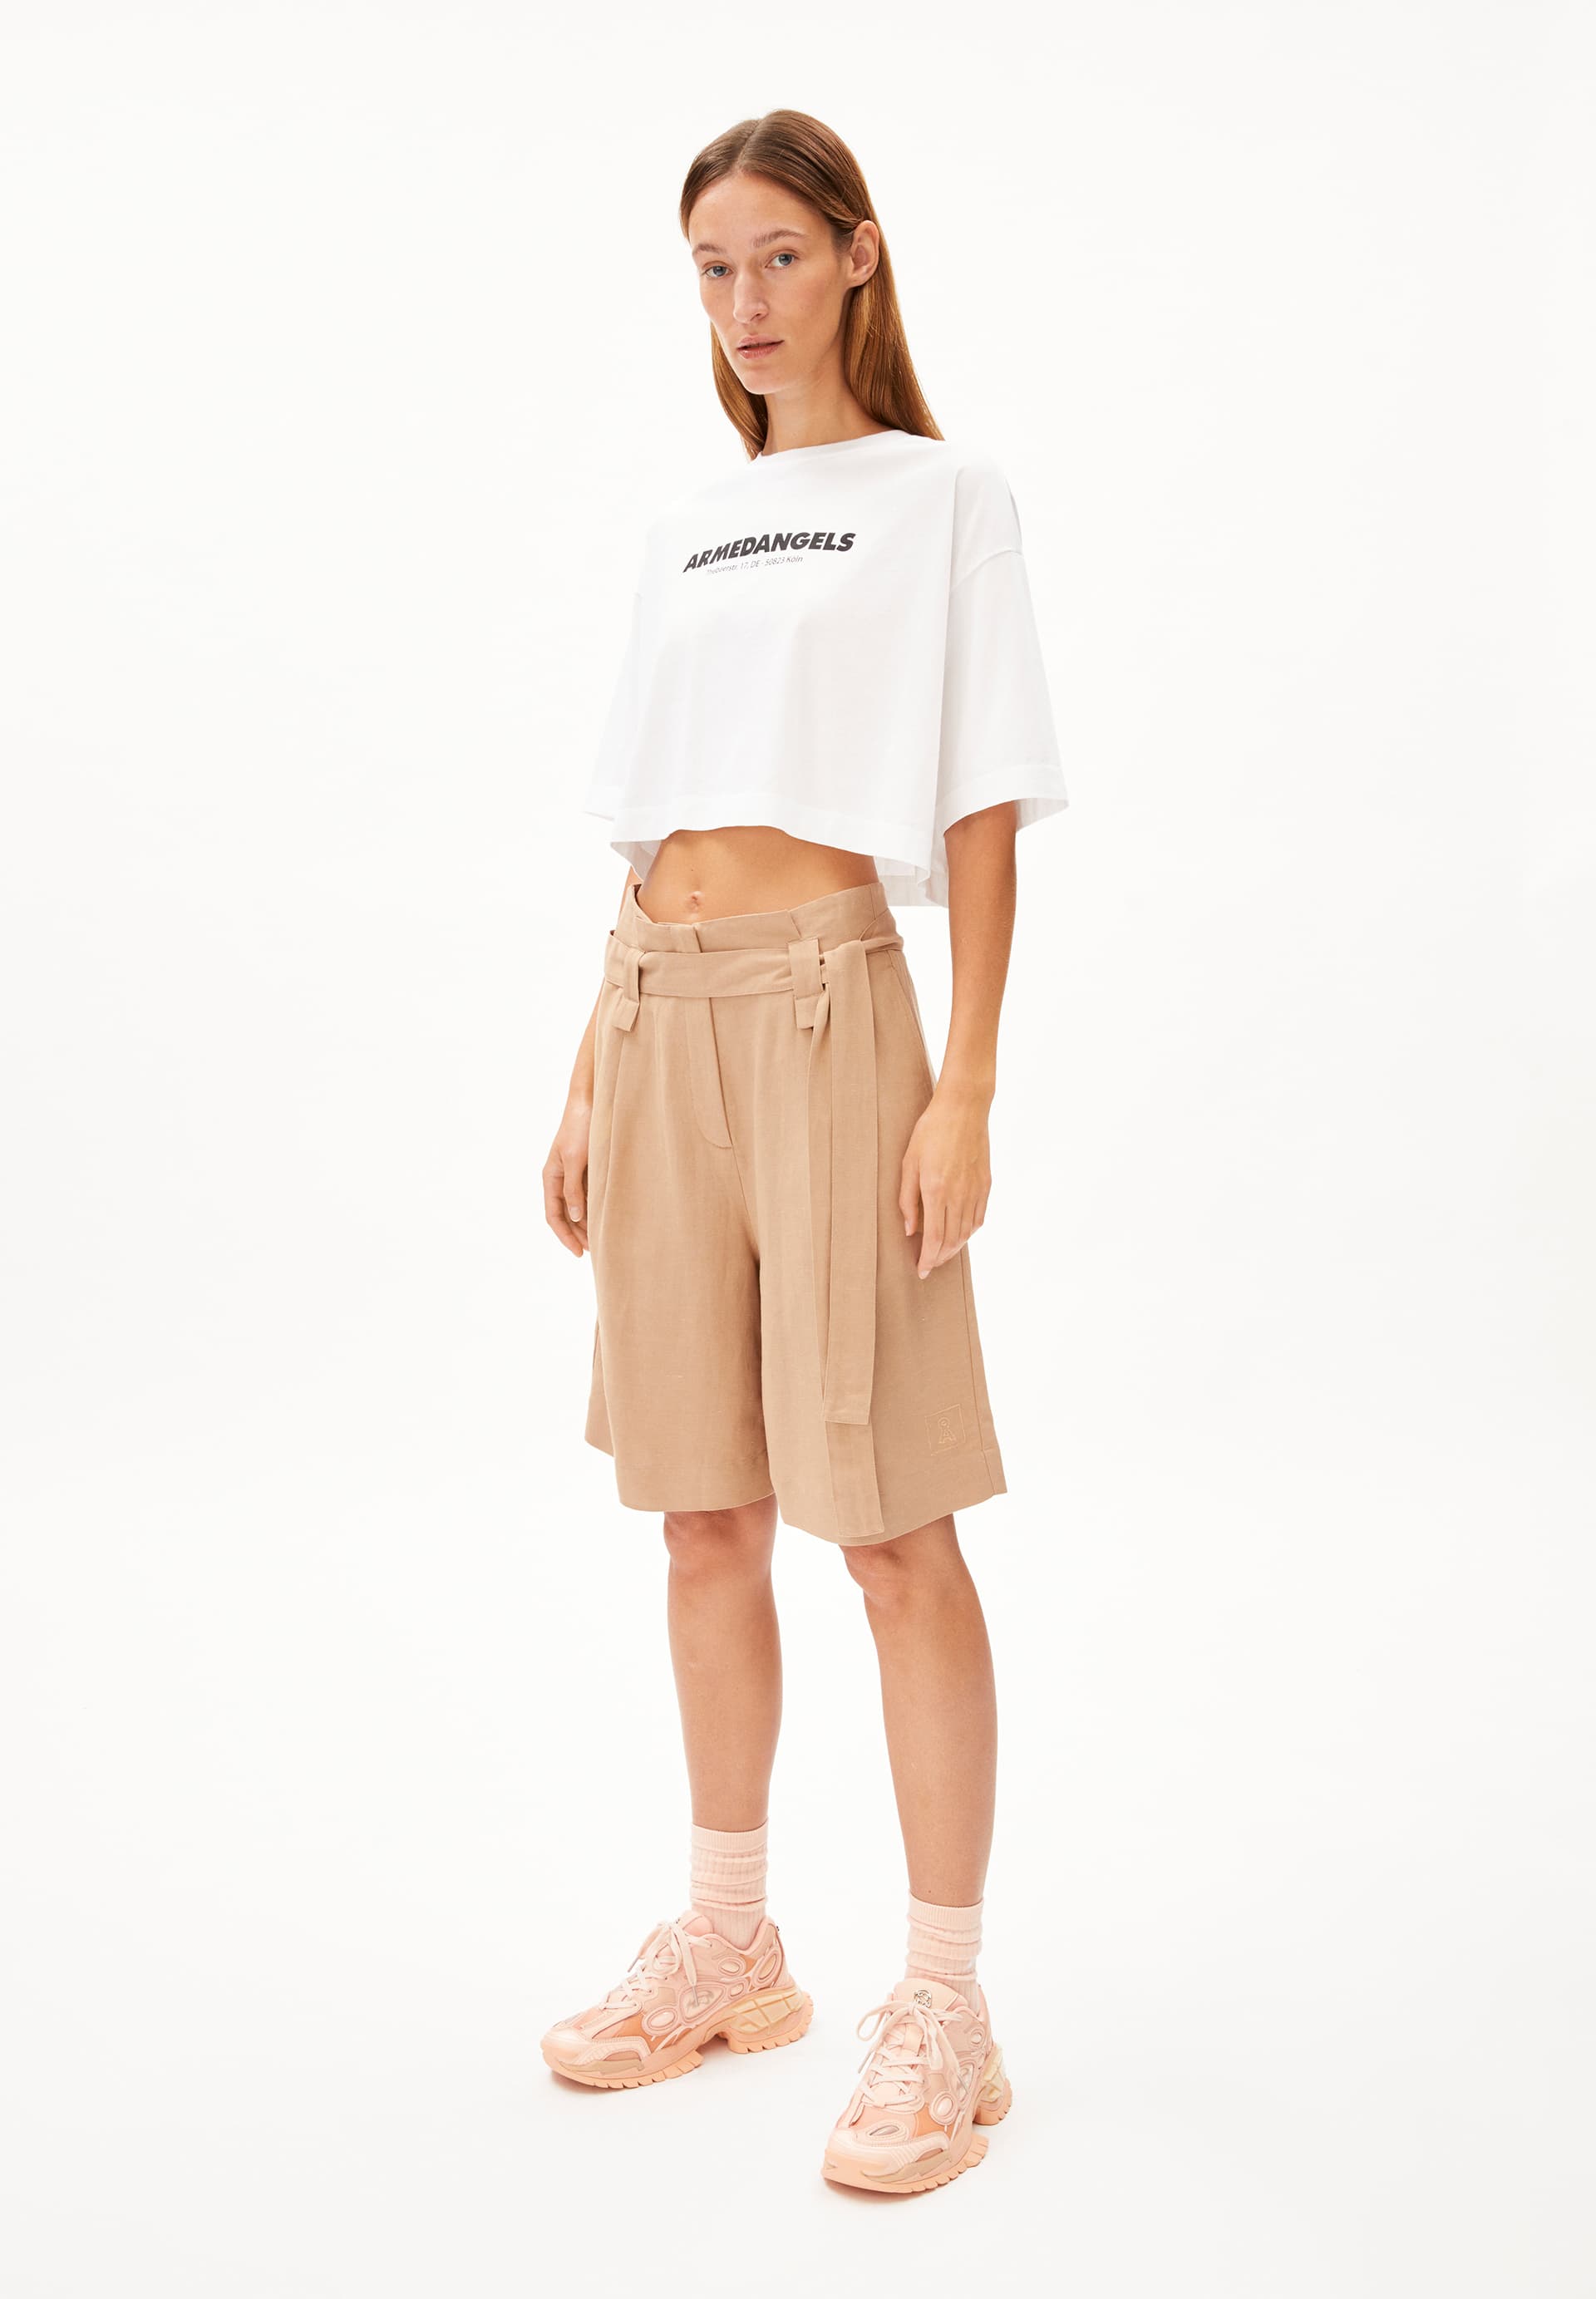 MIRENAA LINO Shorts made of Linen-Mix